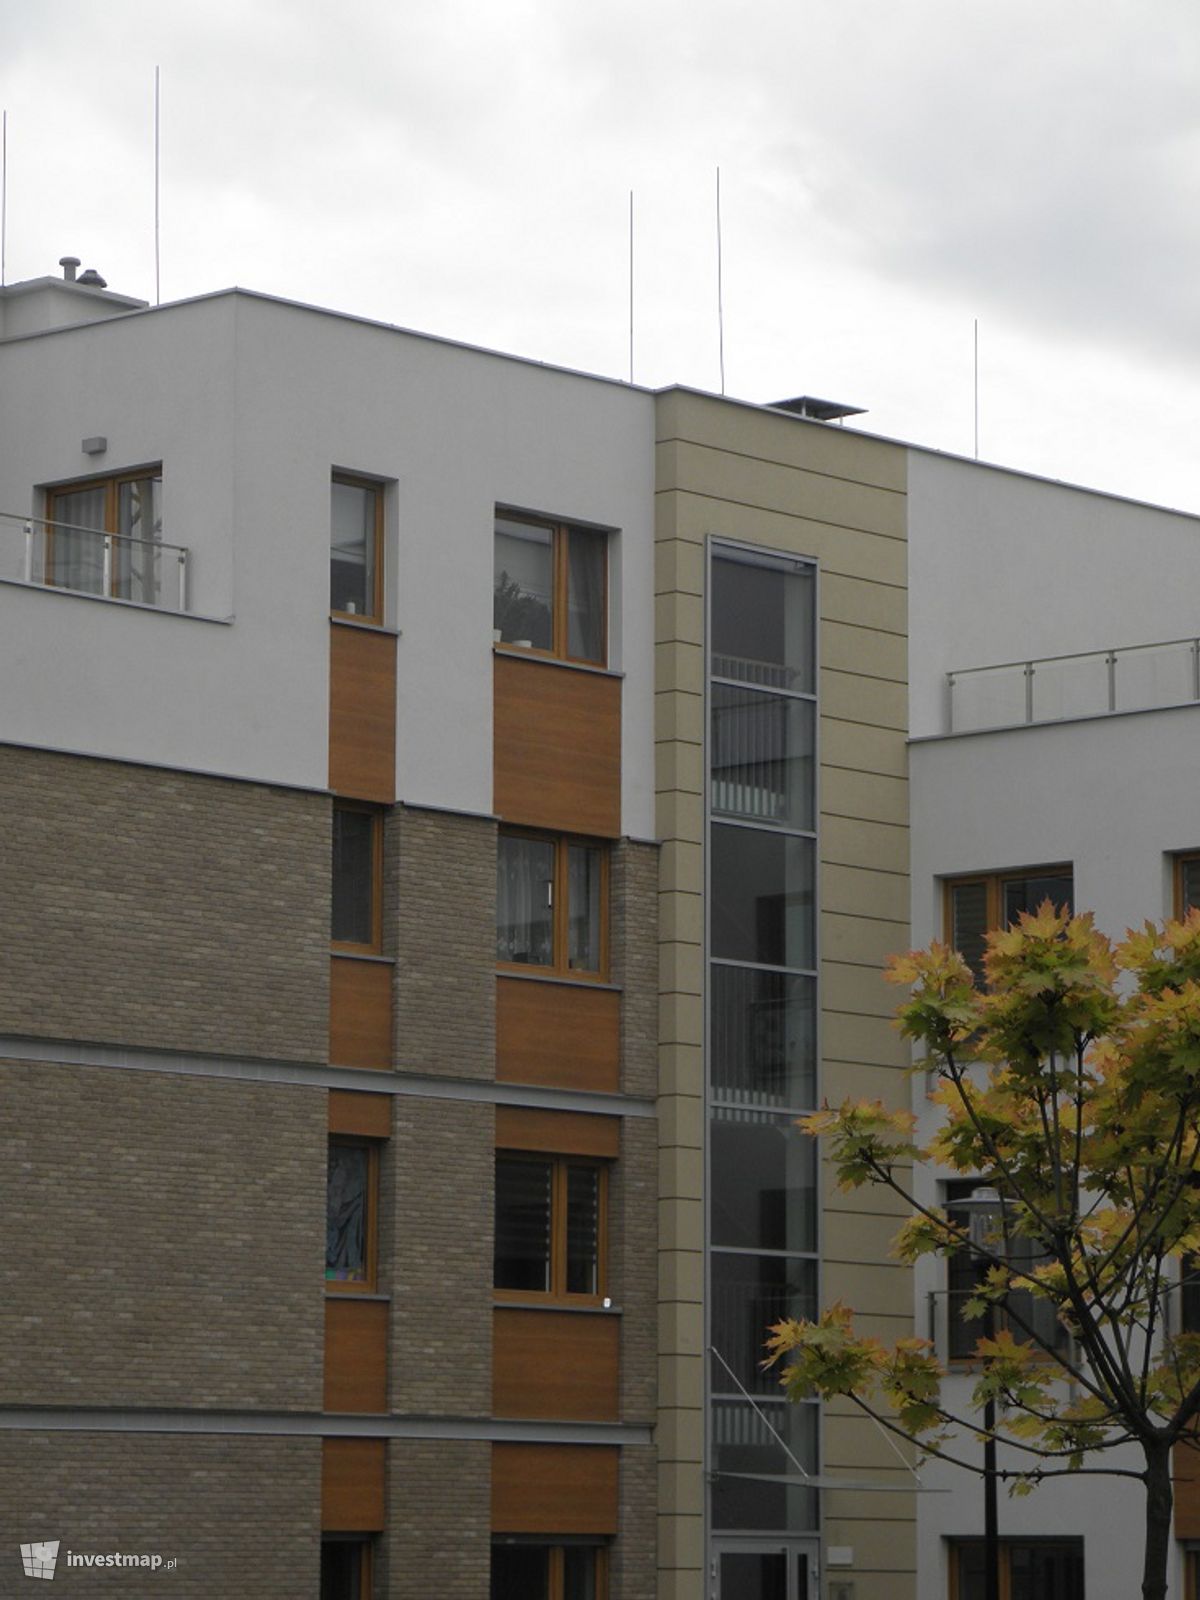 Zdjęcie [Poznań] Budynki mieszkaniowe z lokalami użytkowymi, ul. Księżycowa fot. PieEetrek 